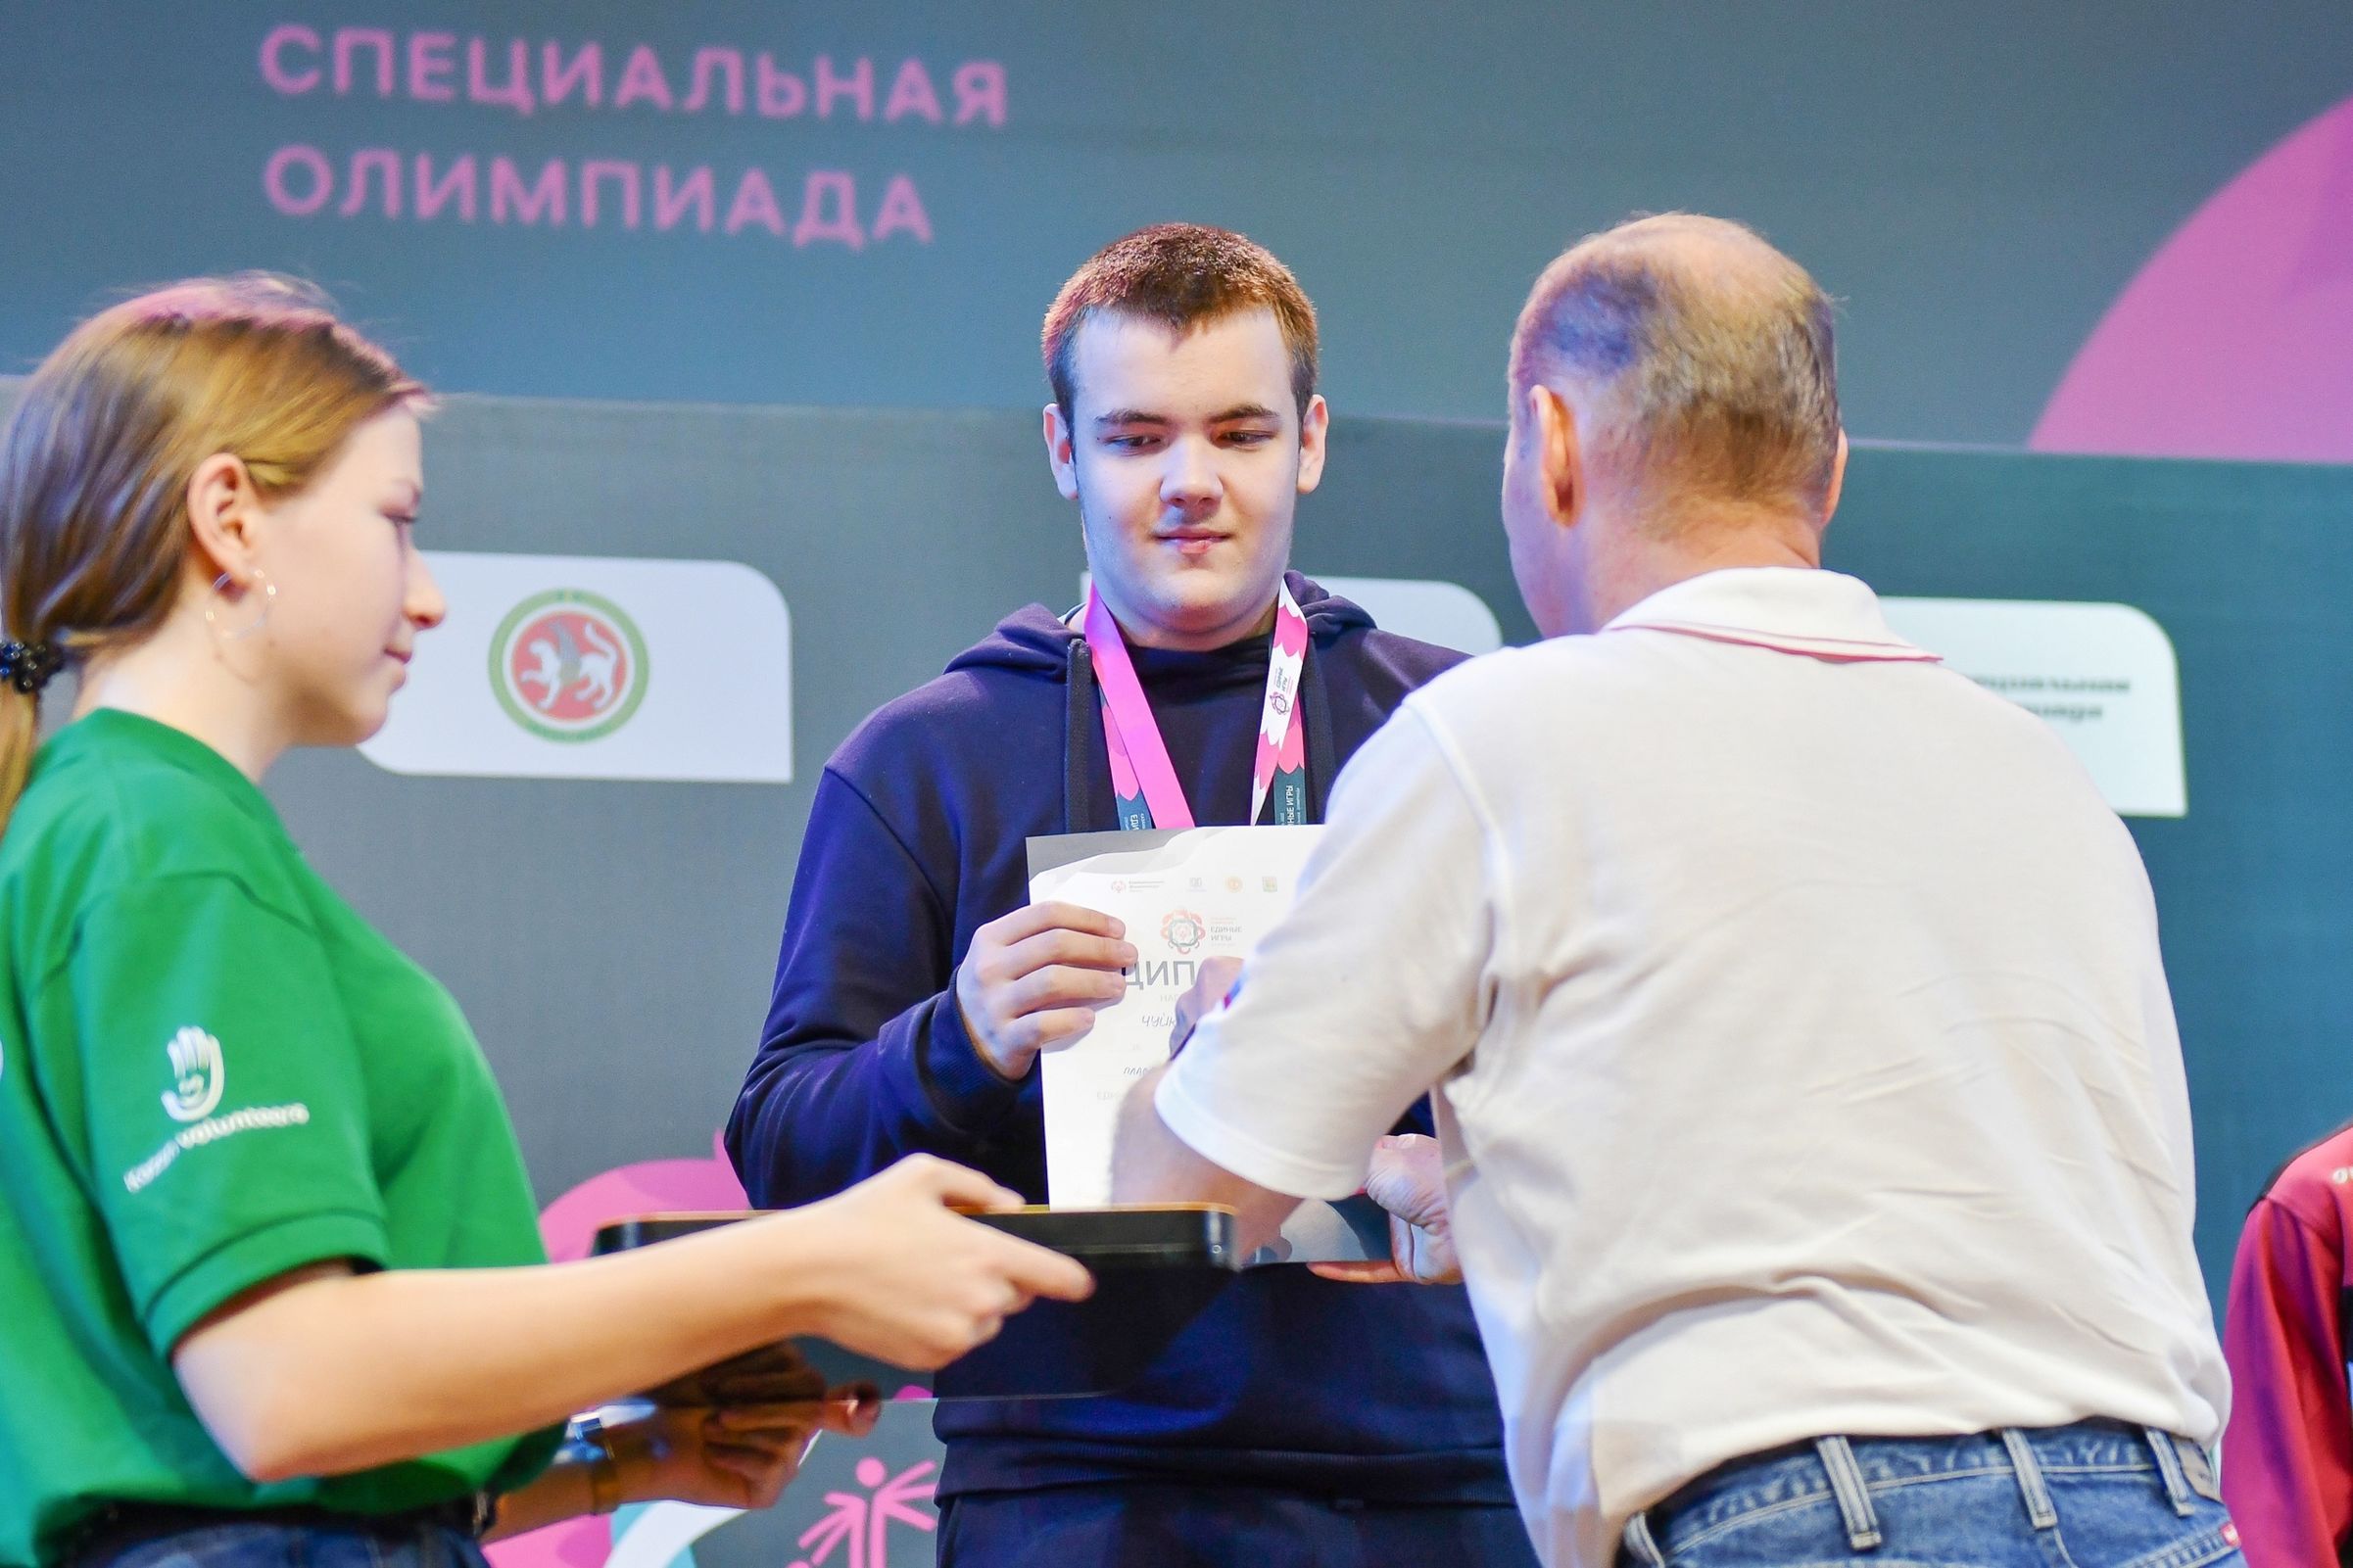 Ярославцы завоевали медали Единых игр Специальной олимпиады